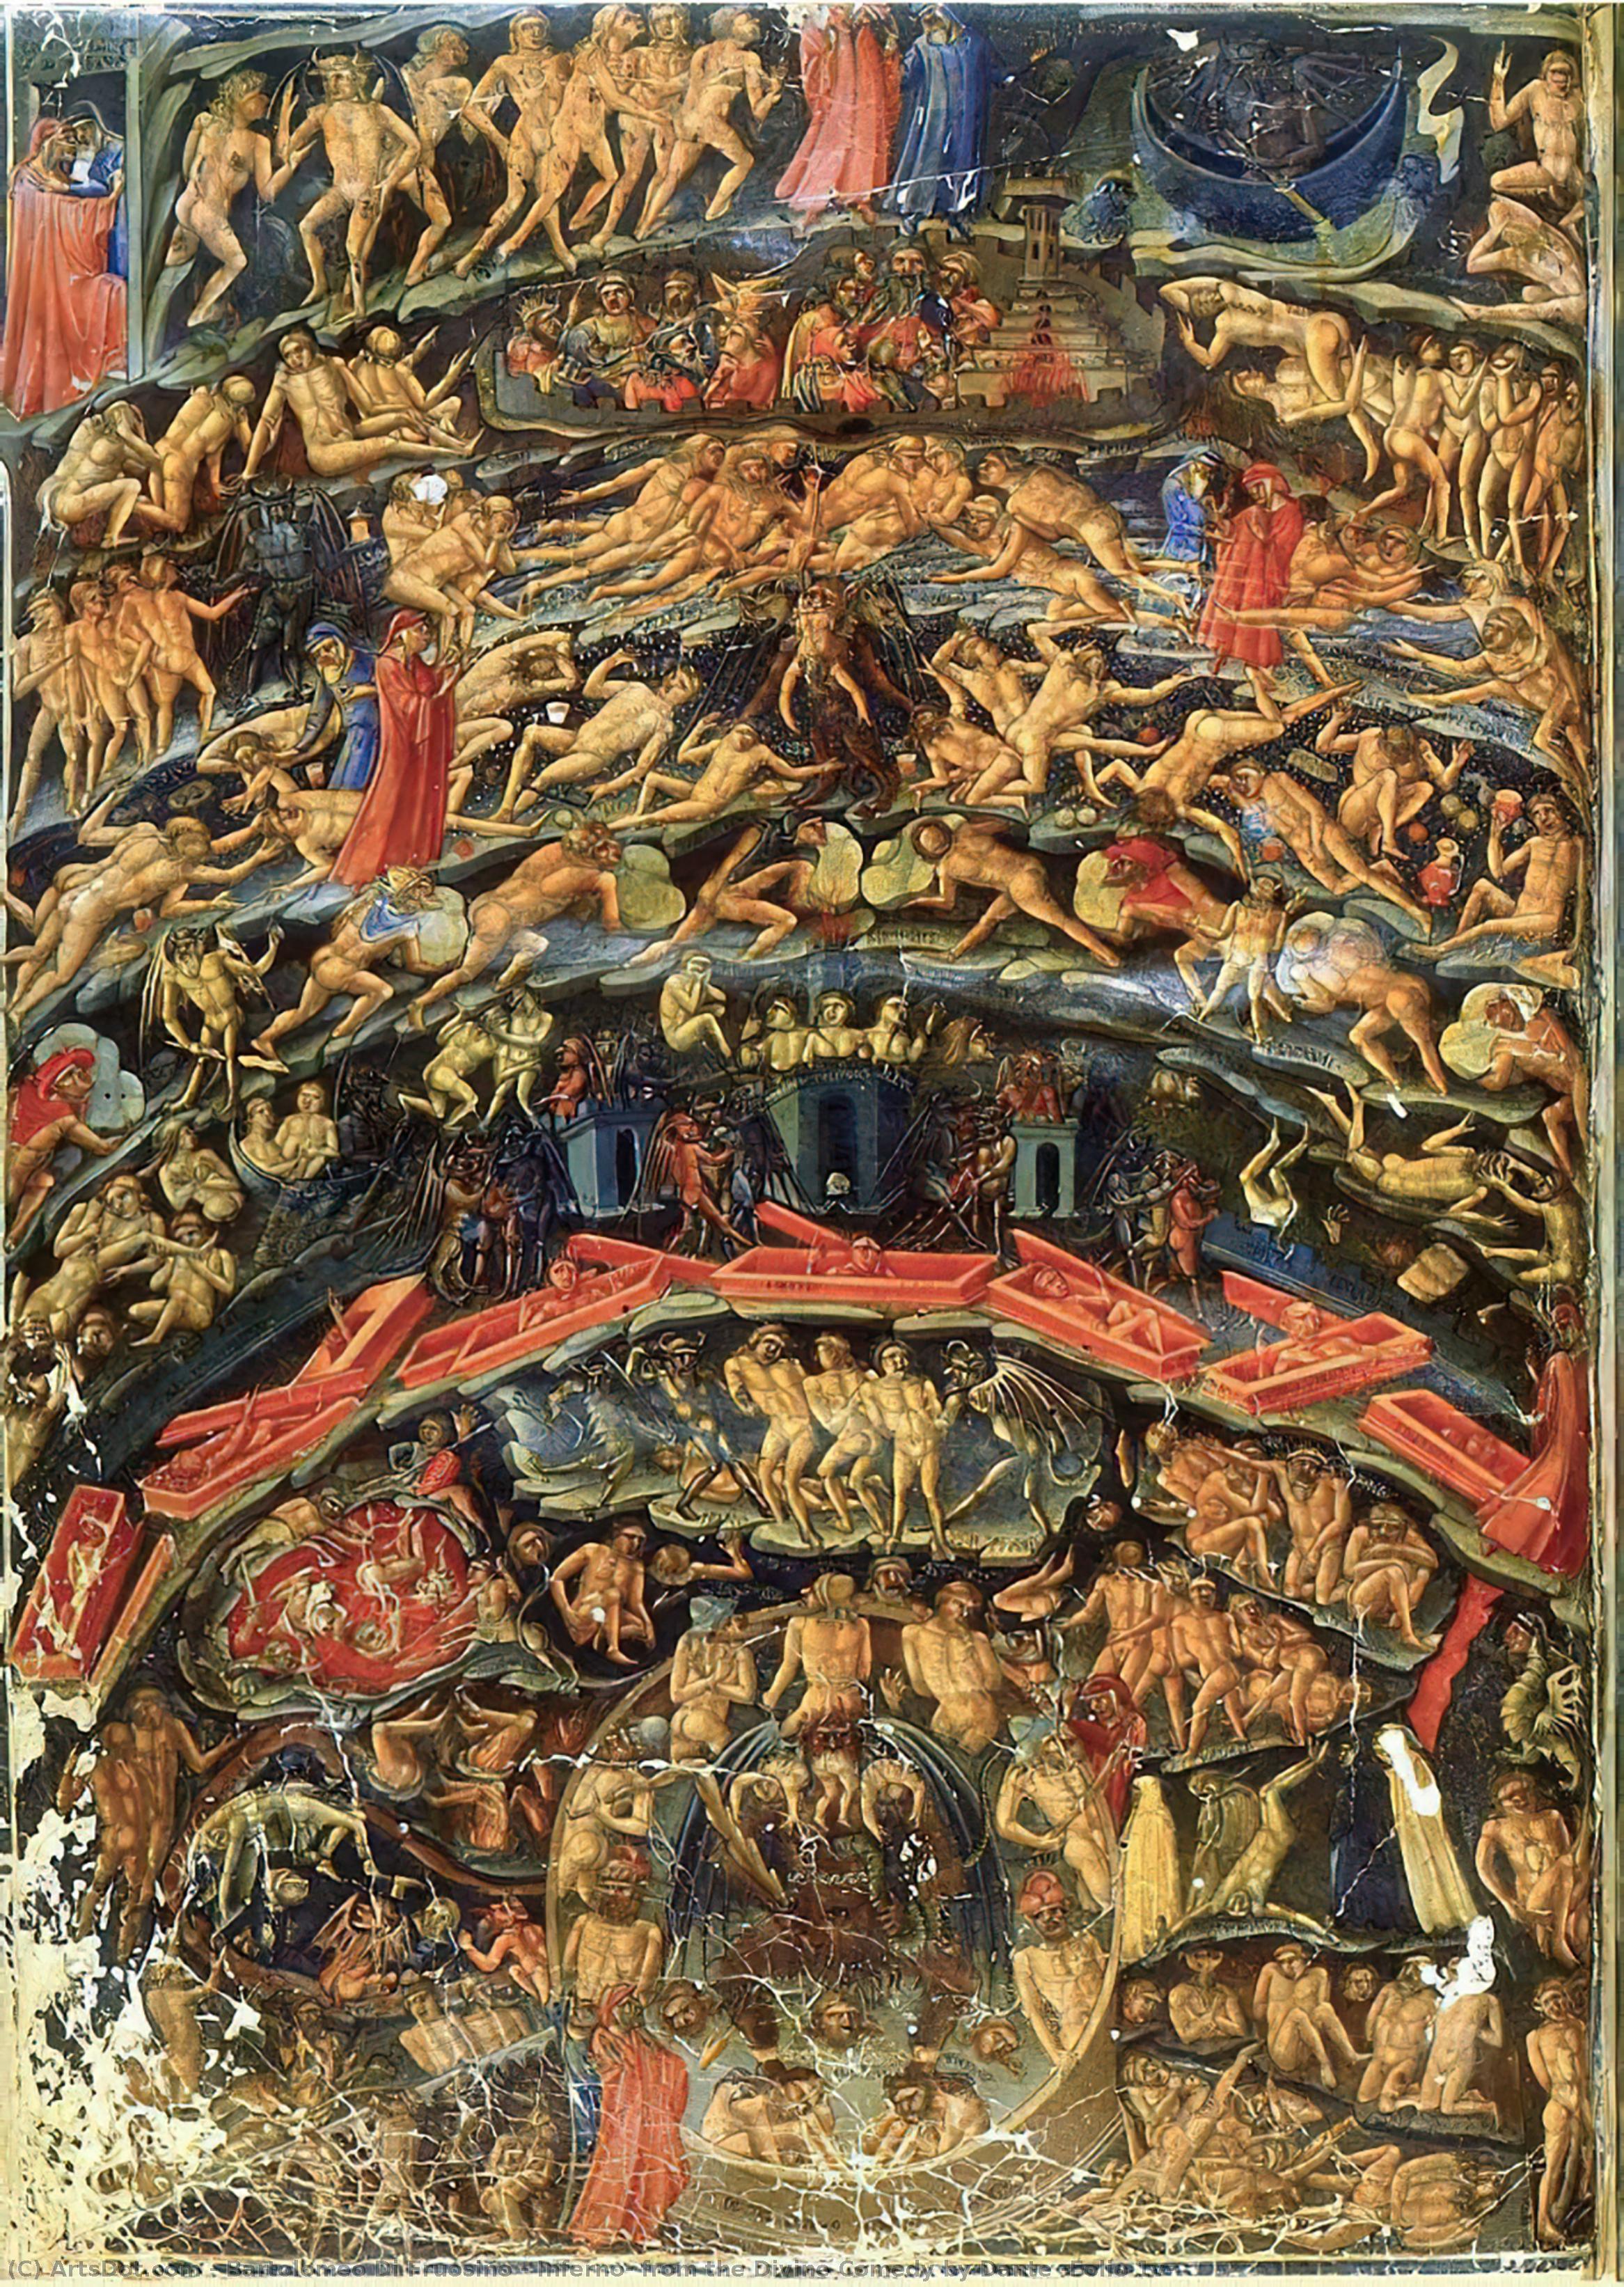 Compre Museu De Reproduções De Arte Inferno, da Divina Comédia de Dante (Folio 1v), 1430 por Bartolomeo Di Fruosino (1366-1441, Italy) | ArtsDot.com